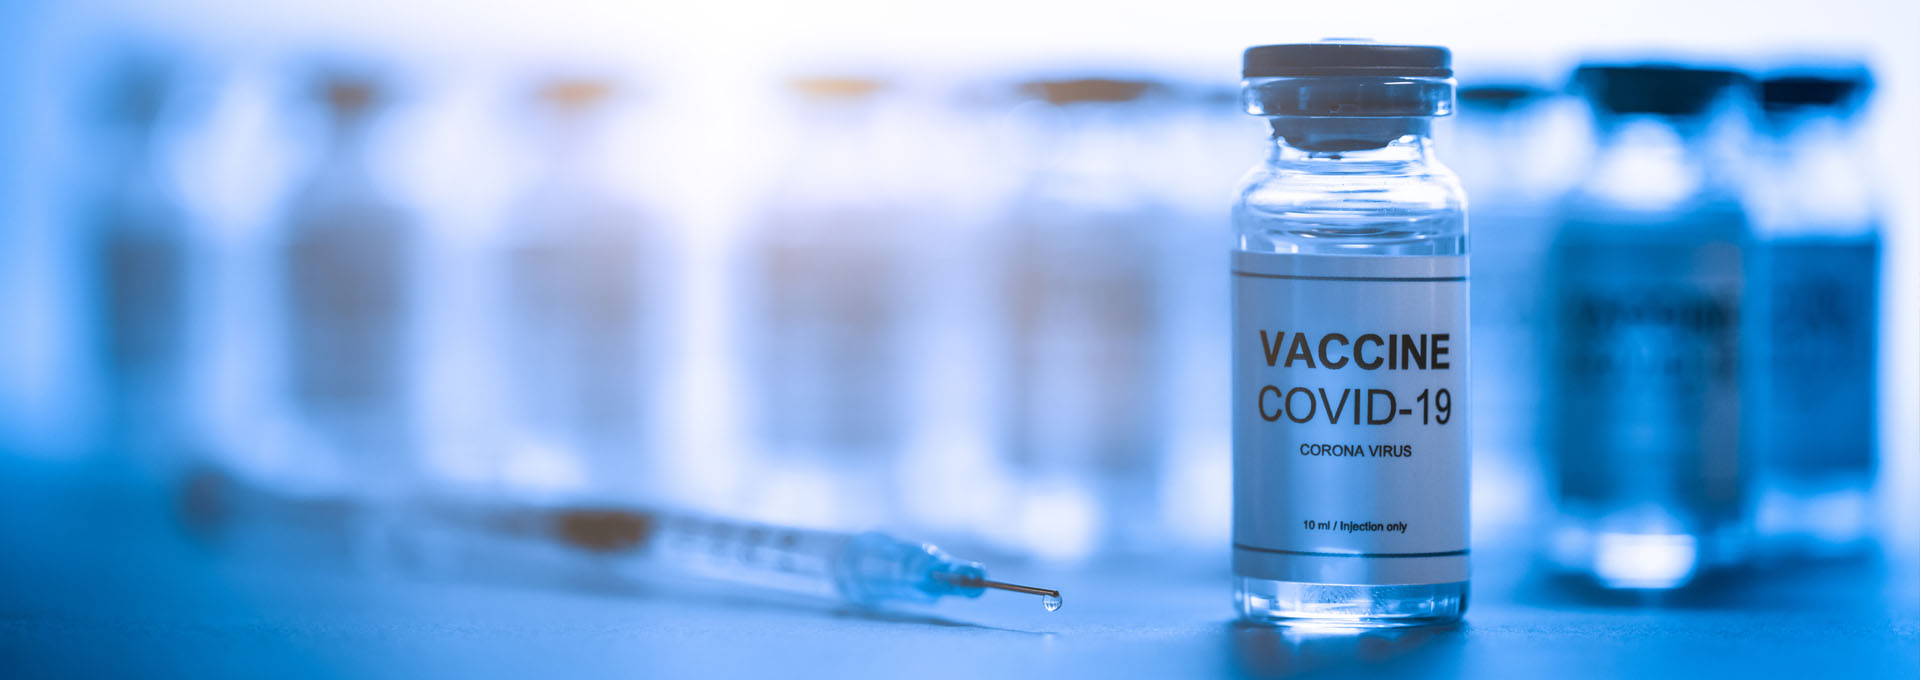 特邀社论:新冠疫苗与高质量的利害关系